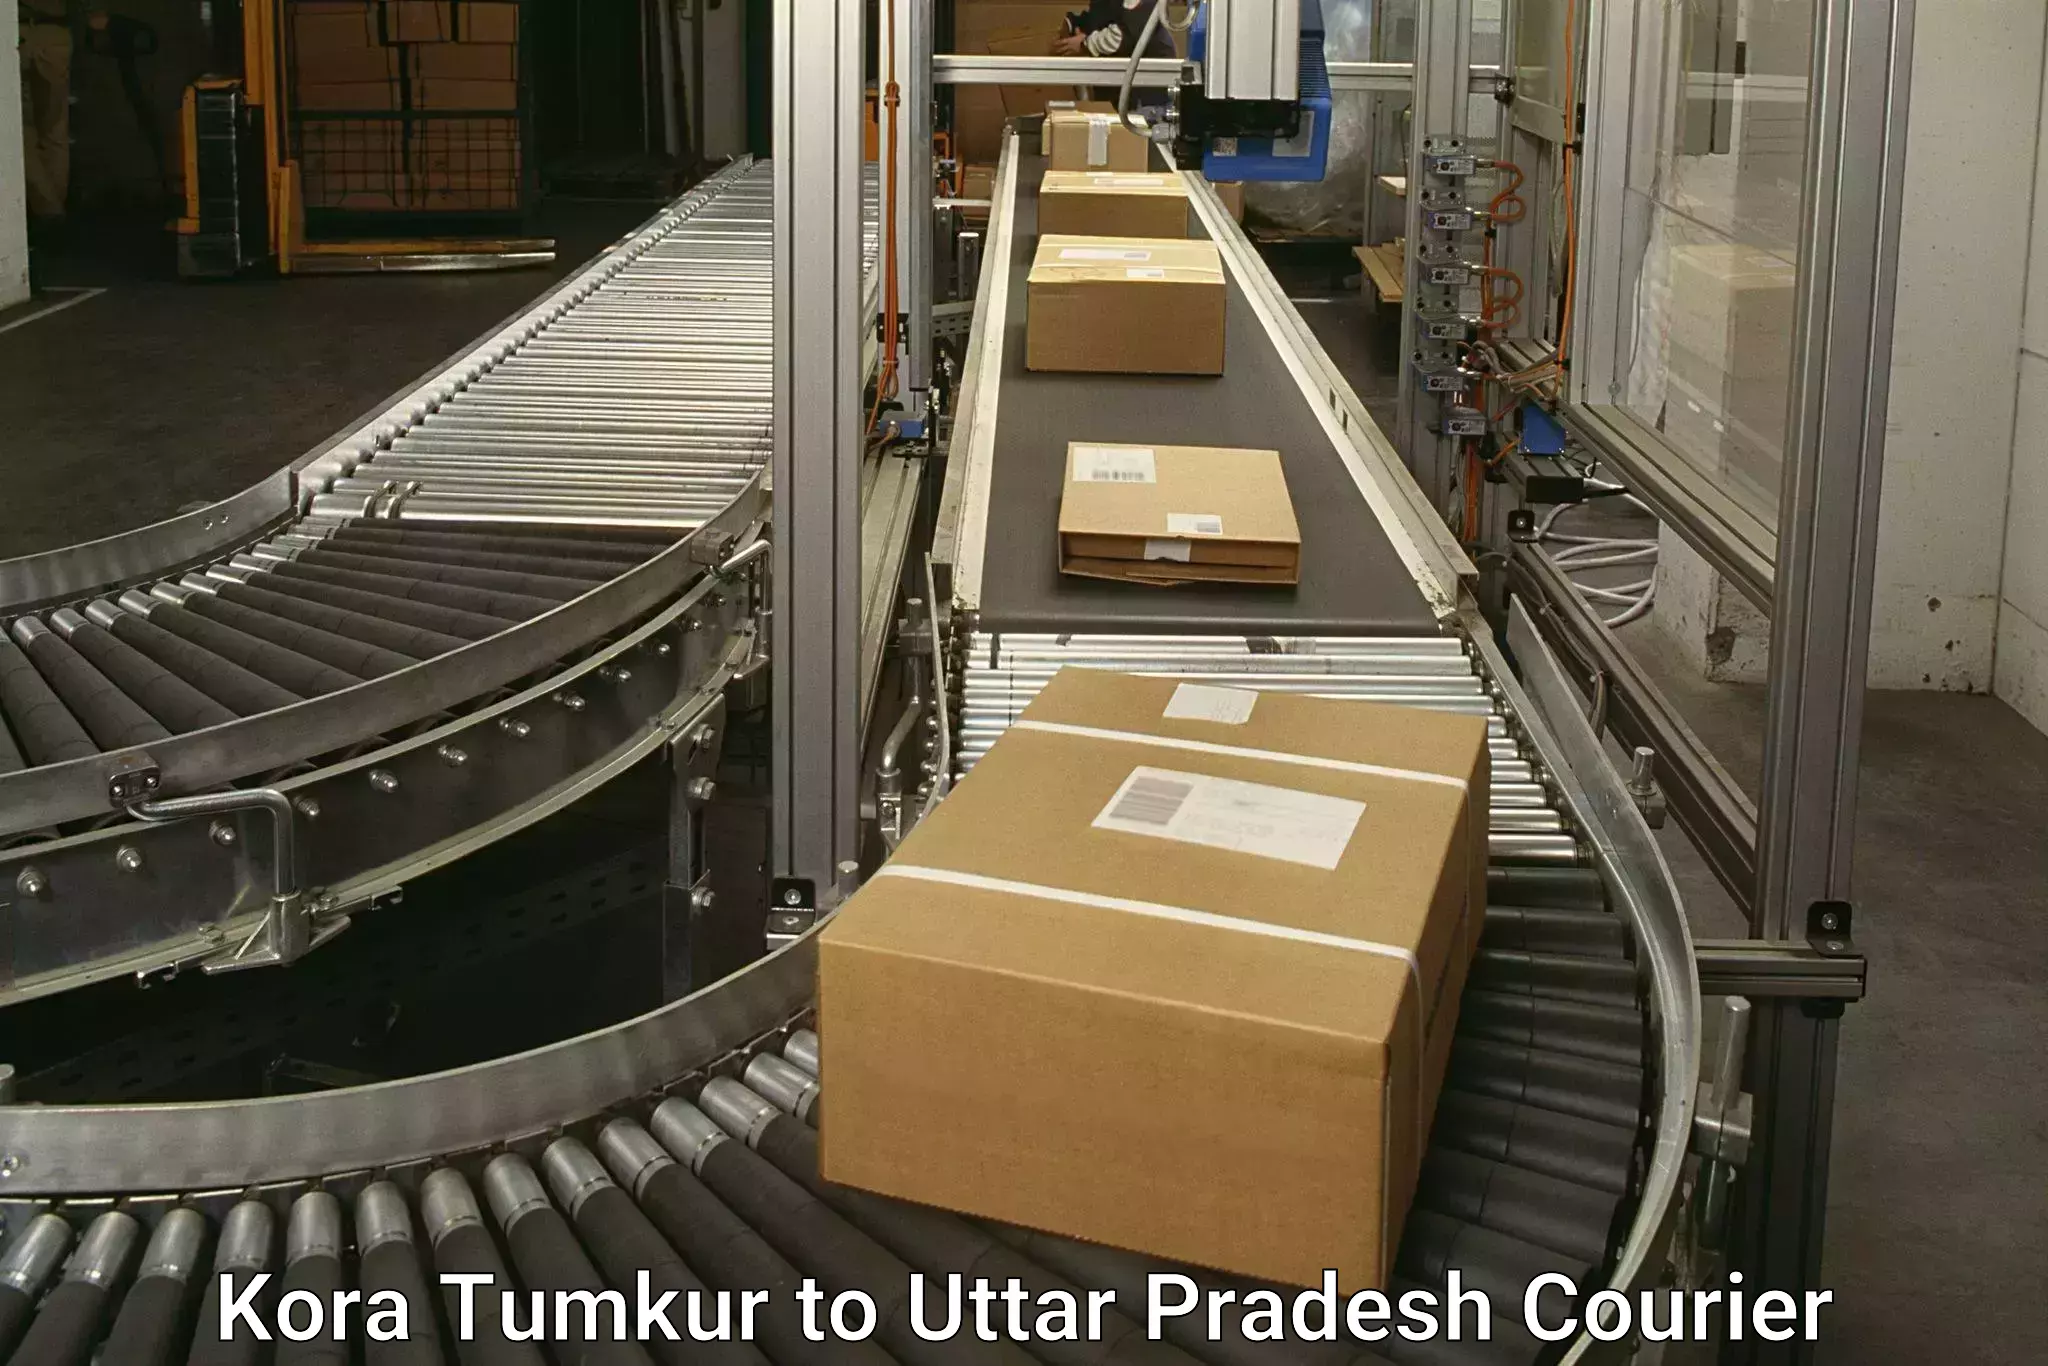 Efficient logistics management Kora Tumkur to Parora